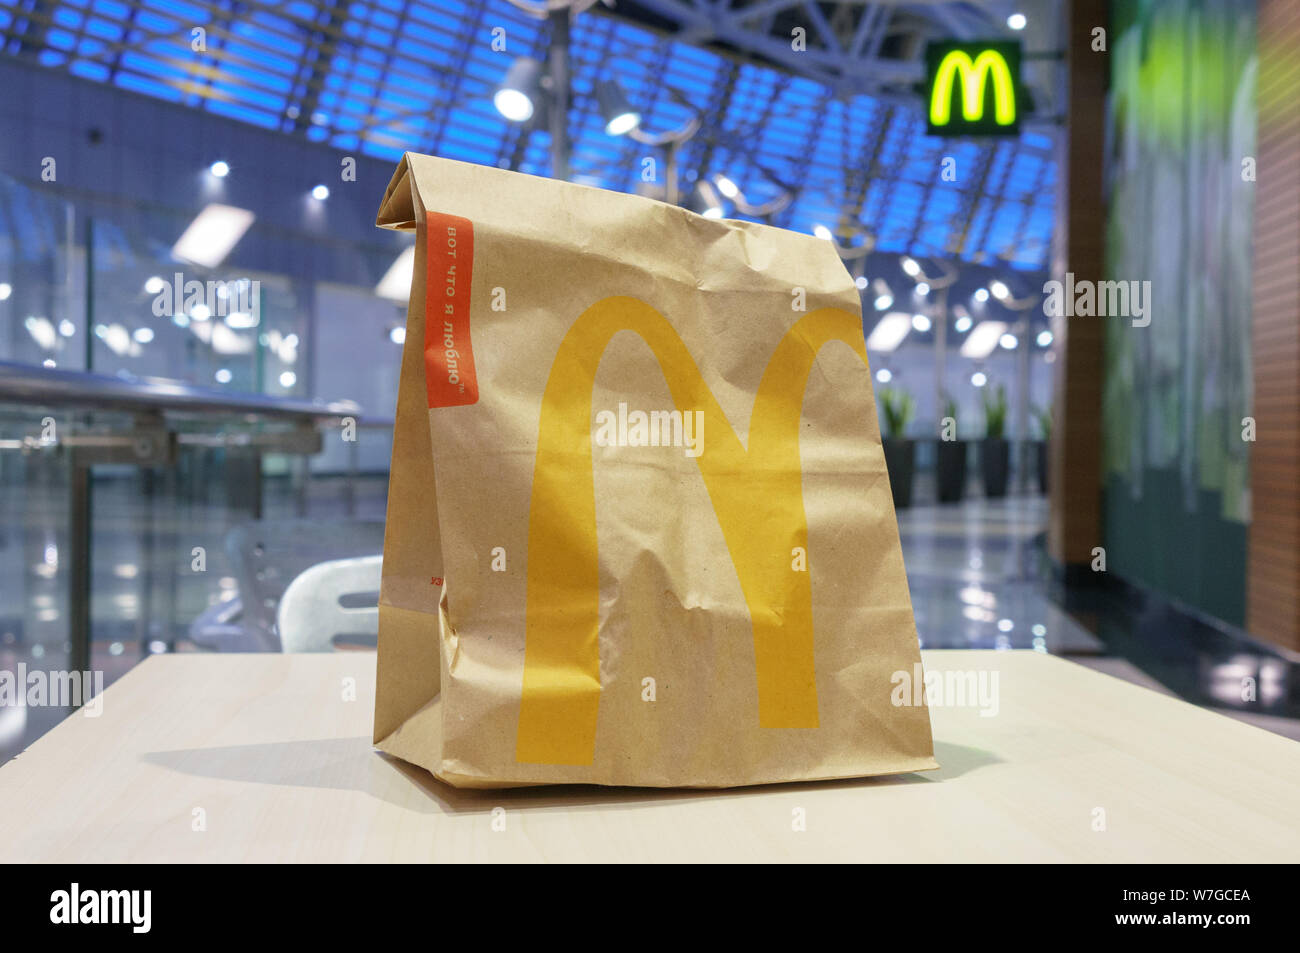 Moscou, Russie - Février 07, 2019 : McDonald's sac en papier brun avec kiosque brouillée dans centre commercial. Banque D'Images